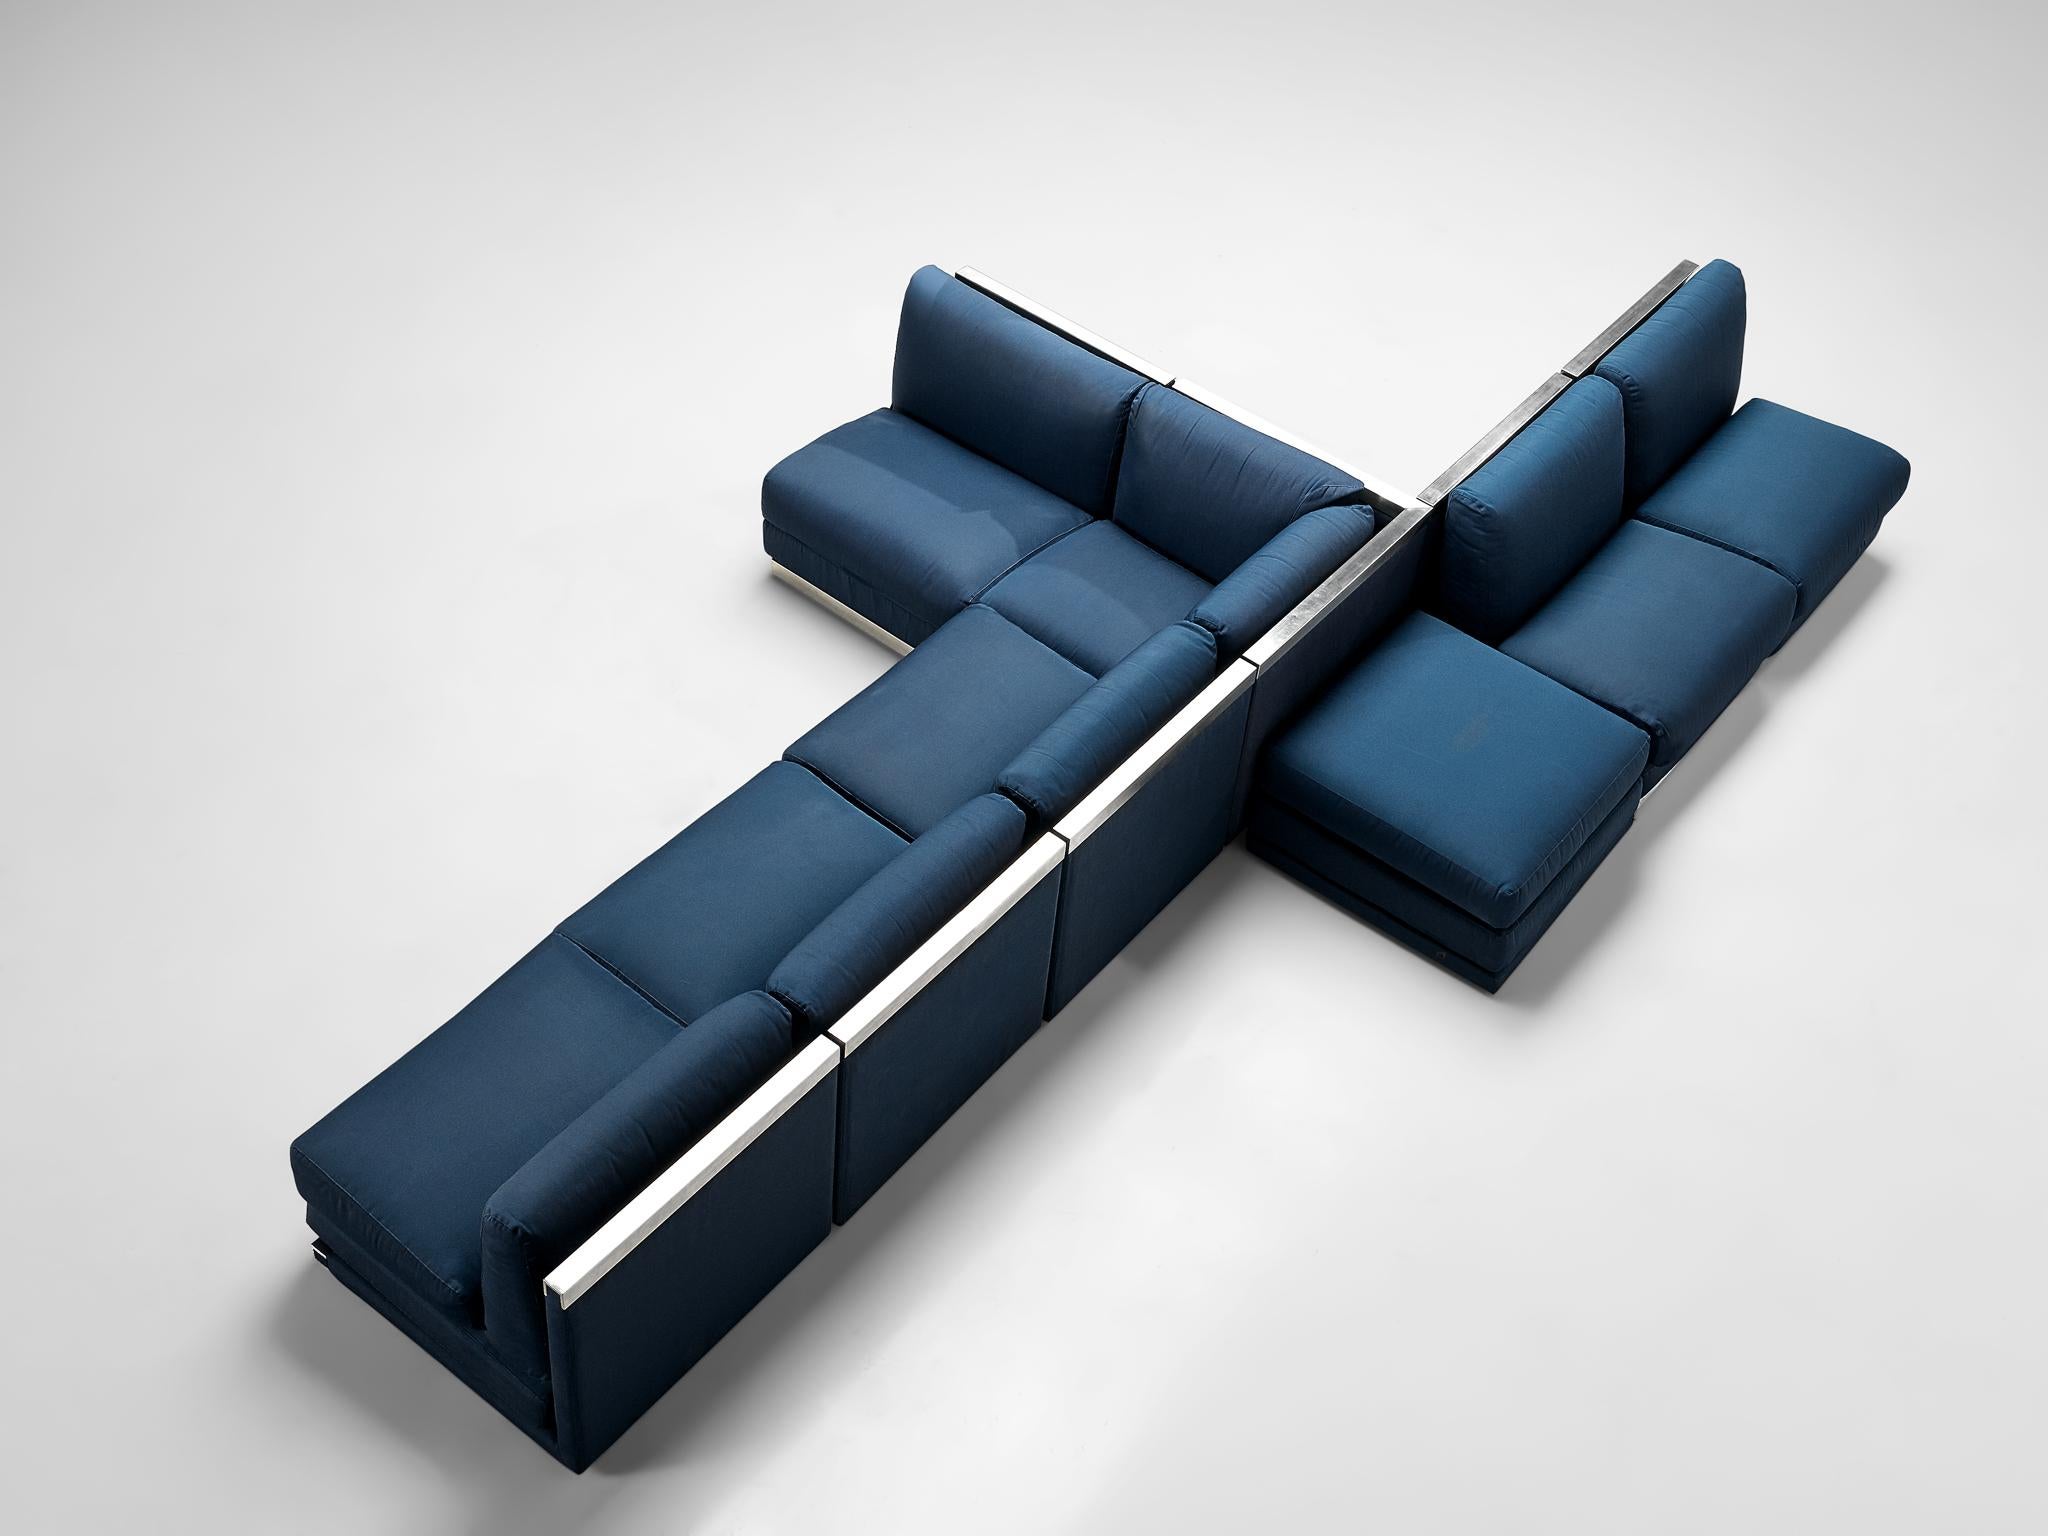 Canapé sectionnel, revêtement en tissu bleu cobalt, aluminium, Italie, années 1980

Grand canapé modulaire postmoderne, composé de six sièges réguliers, d'un coin et d'un élément sans dossier pouvant servir de table d'appoint ou d'ottoman. Une pièce